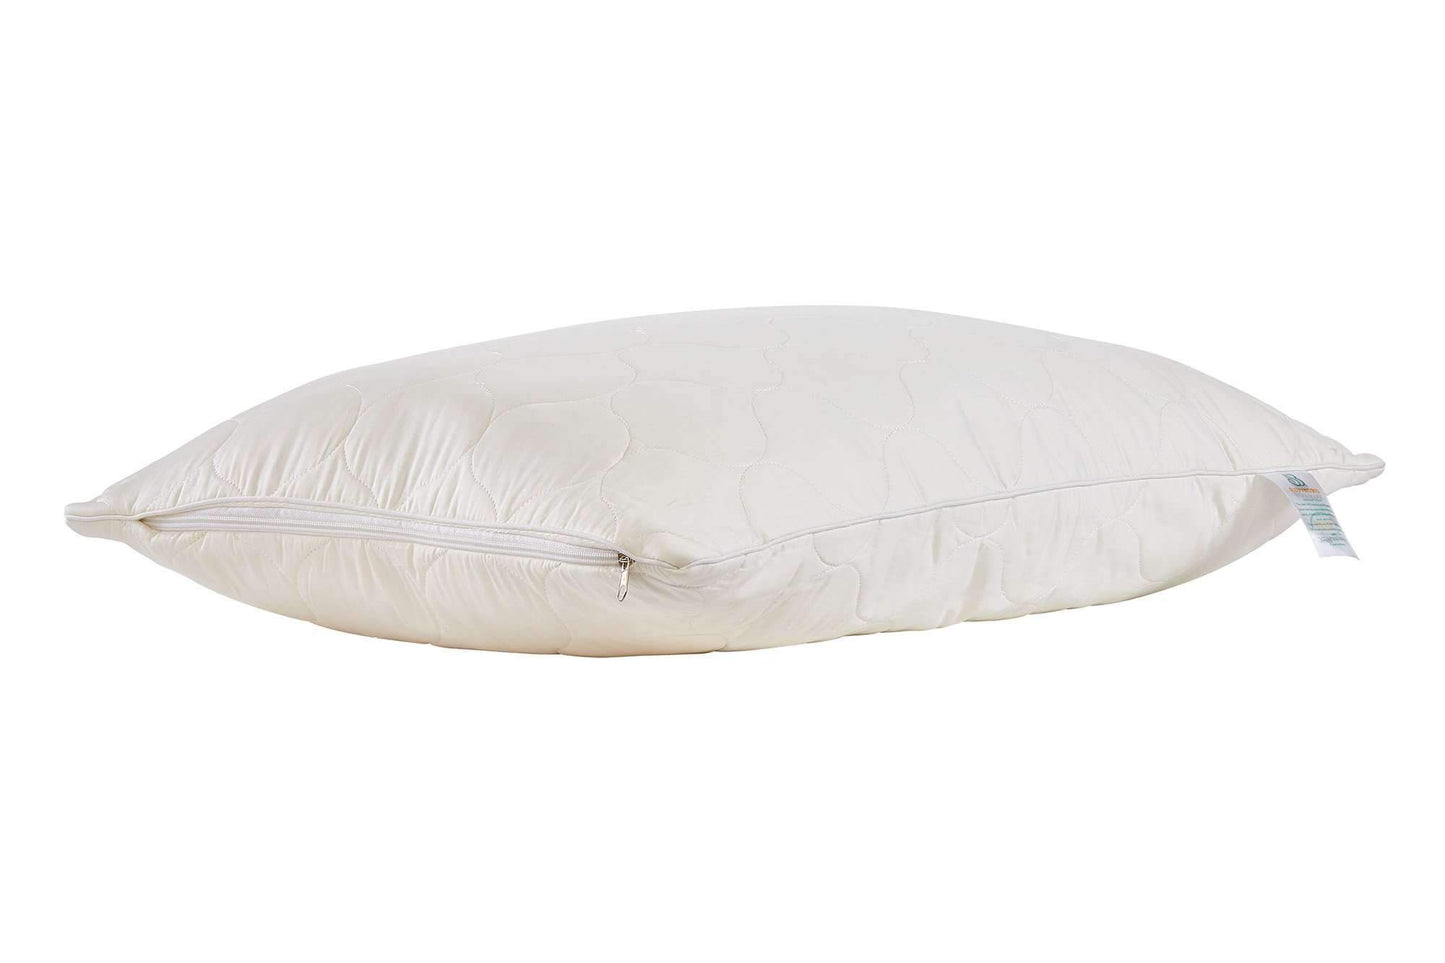 Pillows myWoolly Pillow™ by Sleep & Beyond Sleep & Beyond